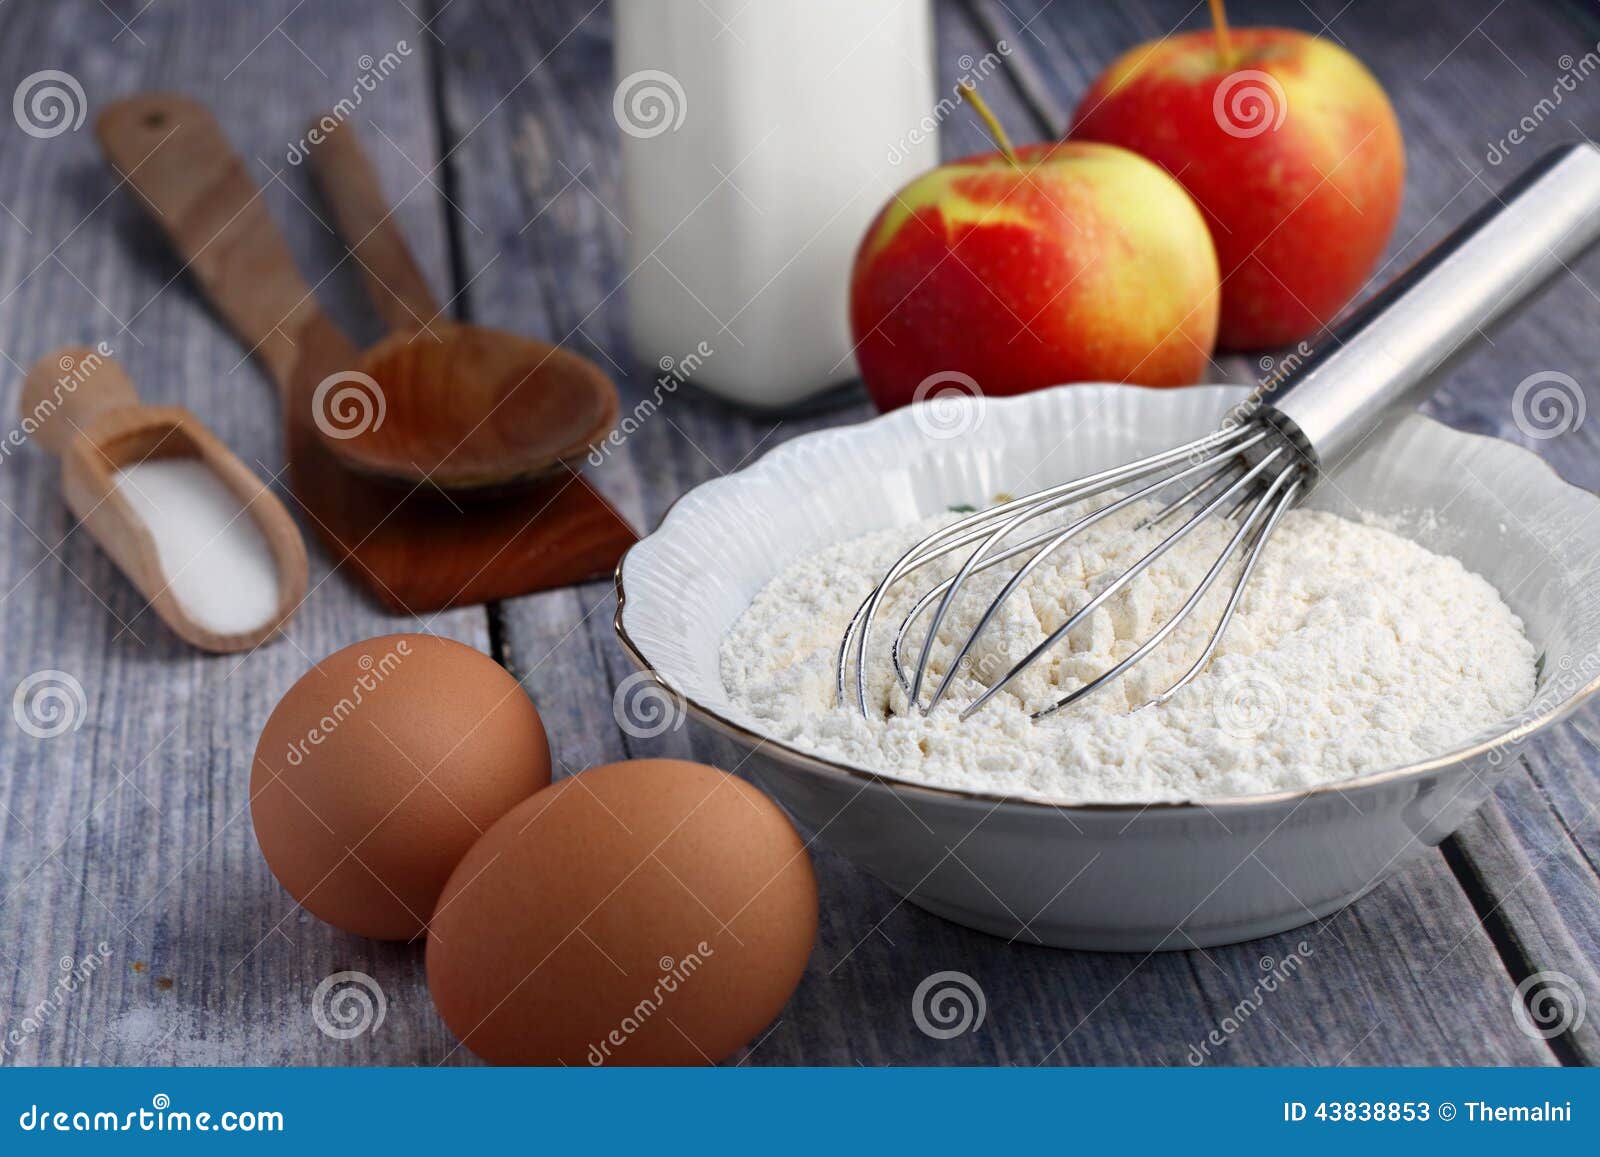 0 make eggs flour 0 no with eggs pr apples how pancakes 169 mr  no including no pancakes milk to